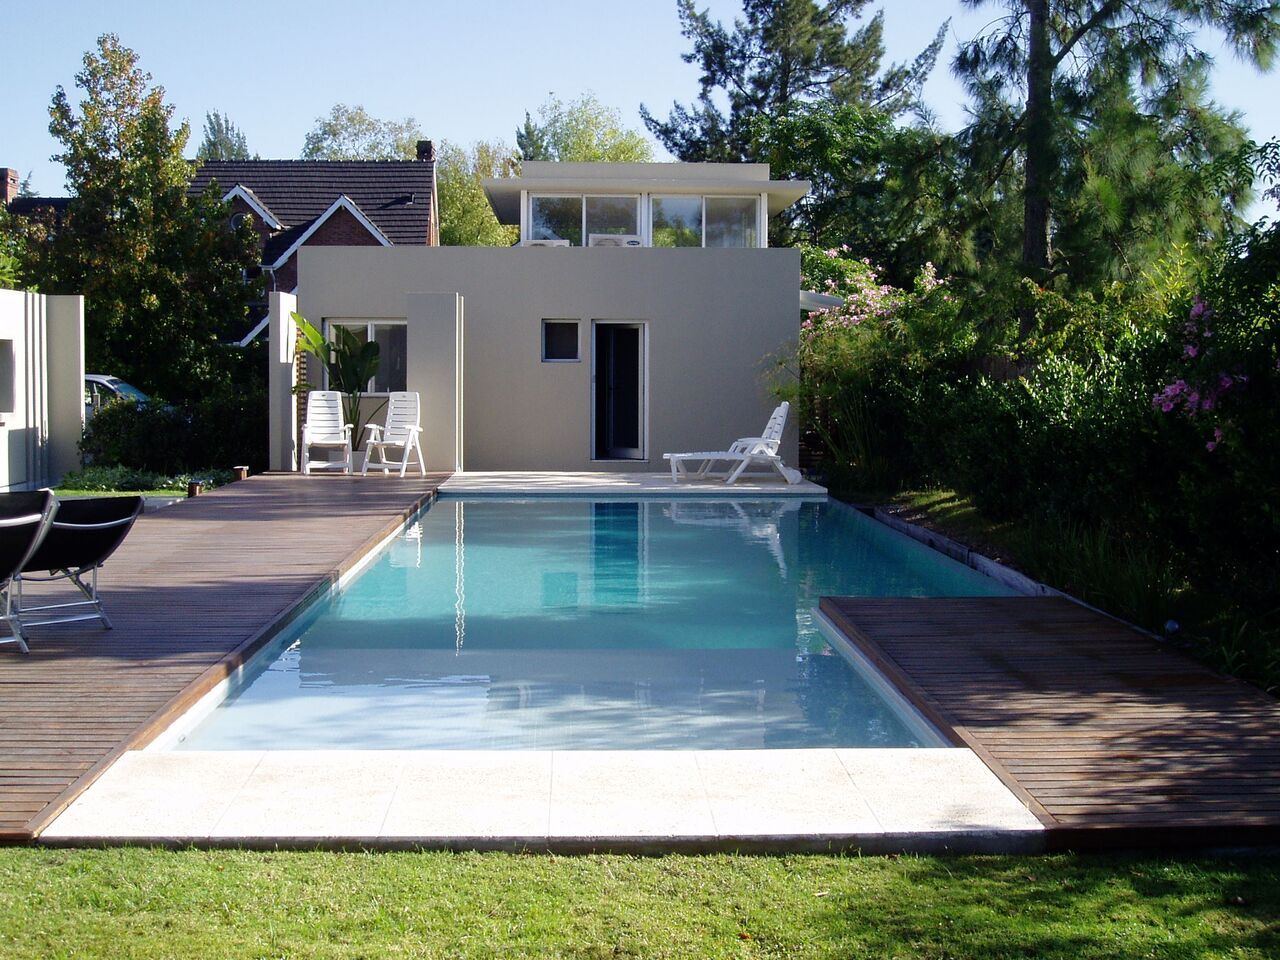 Casa NR, gatarqs gatarqs Hồ bơi phong cách hiện đại